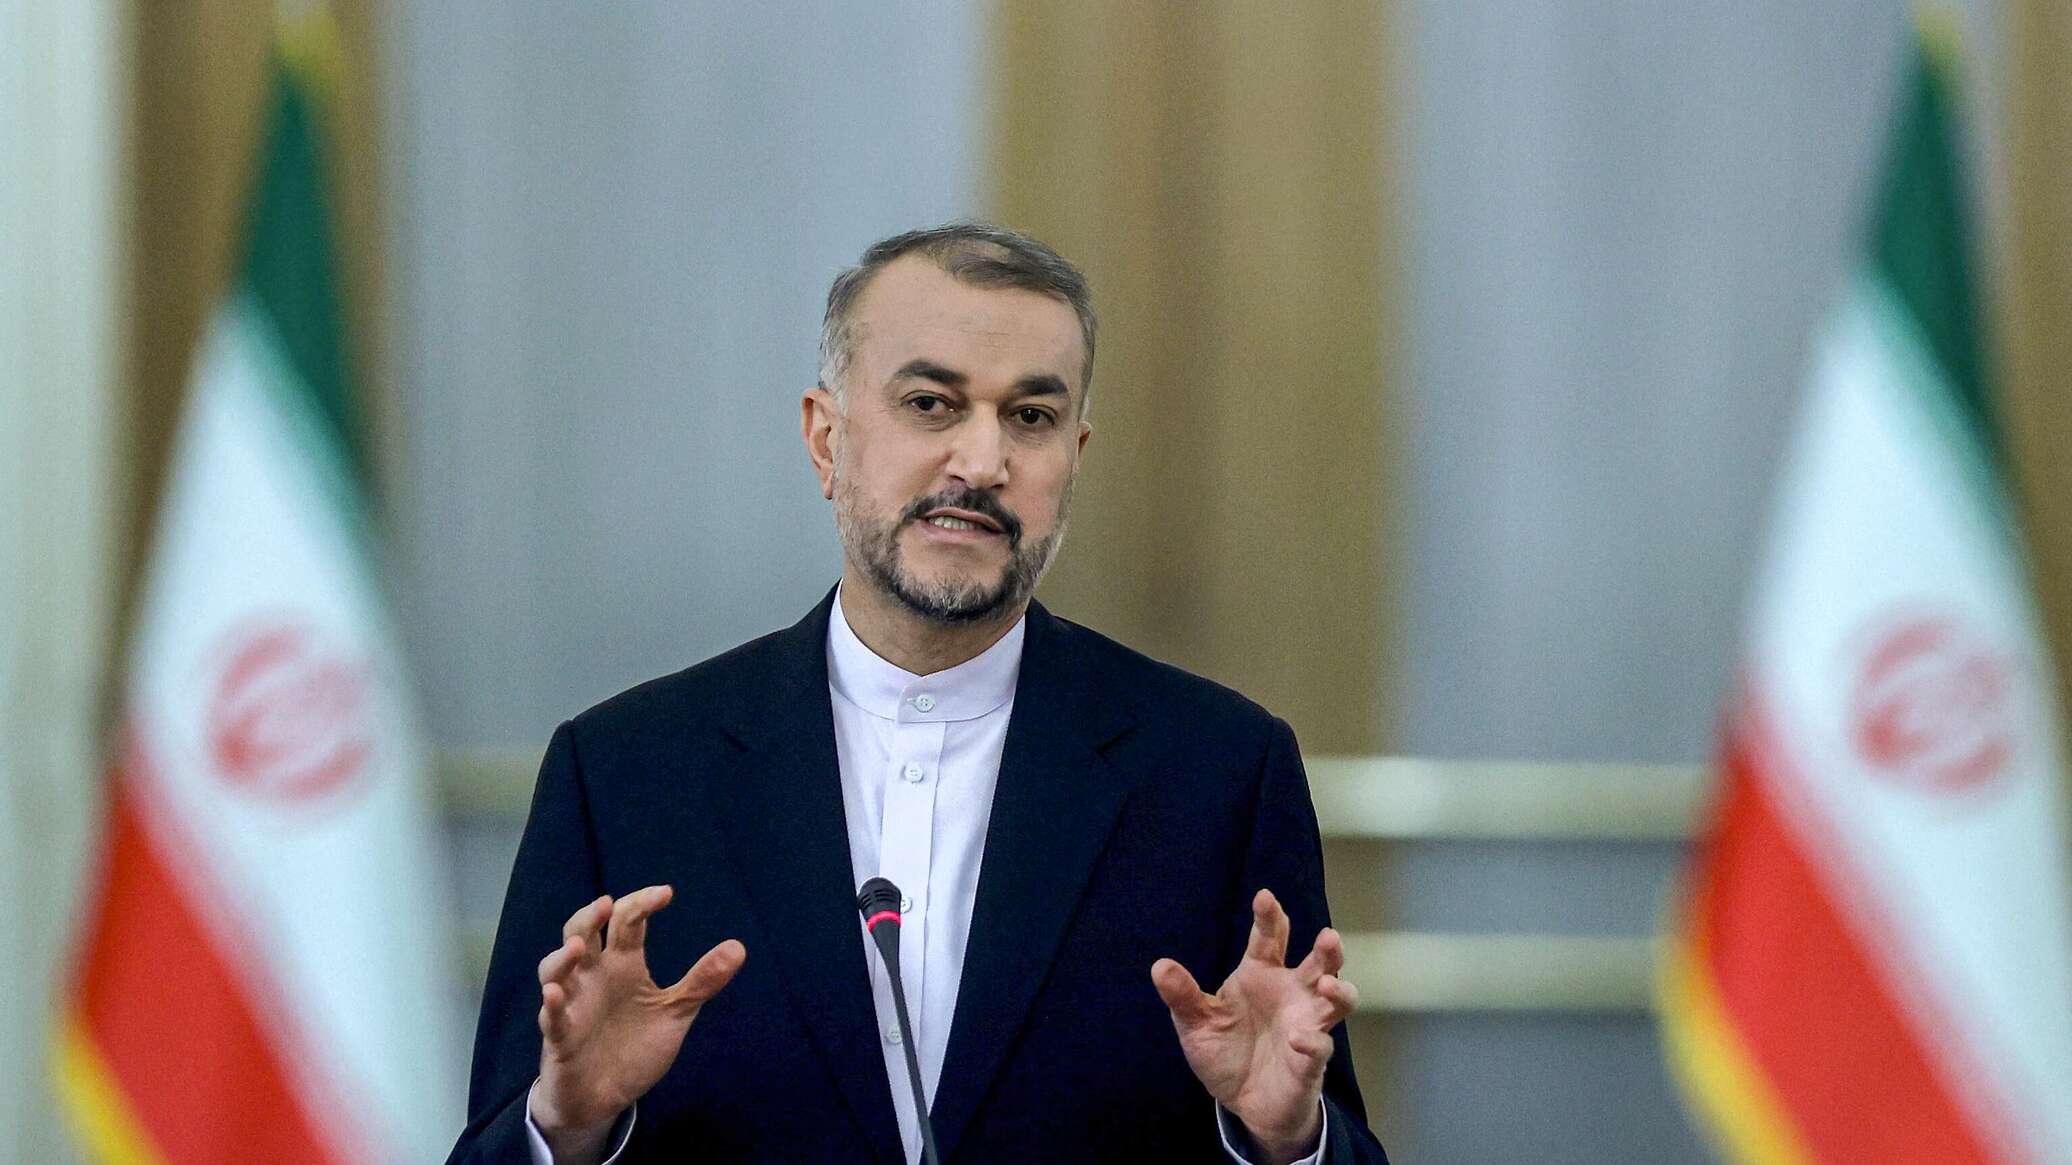 إيران ترسل مذكرة رسمية إلى منظمة التعاون الإسلامي بعد تحفظها على إعلان قمة الرياض